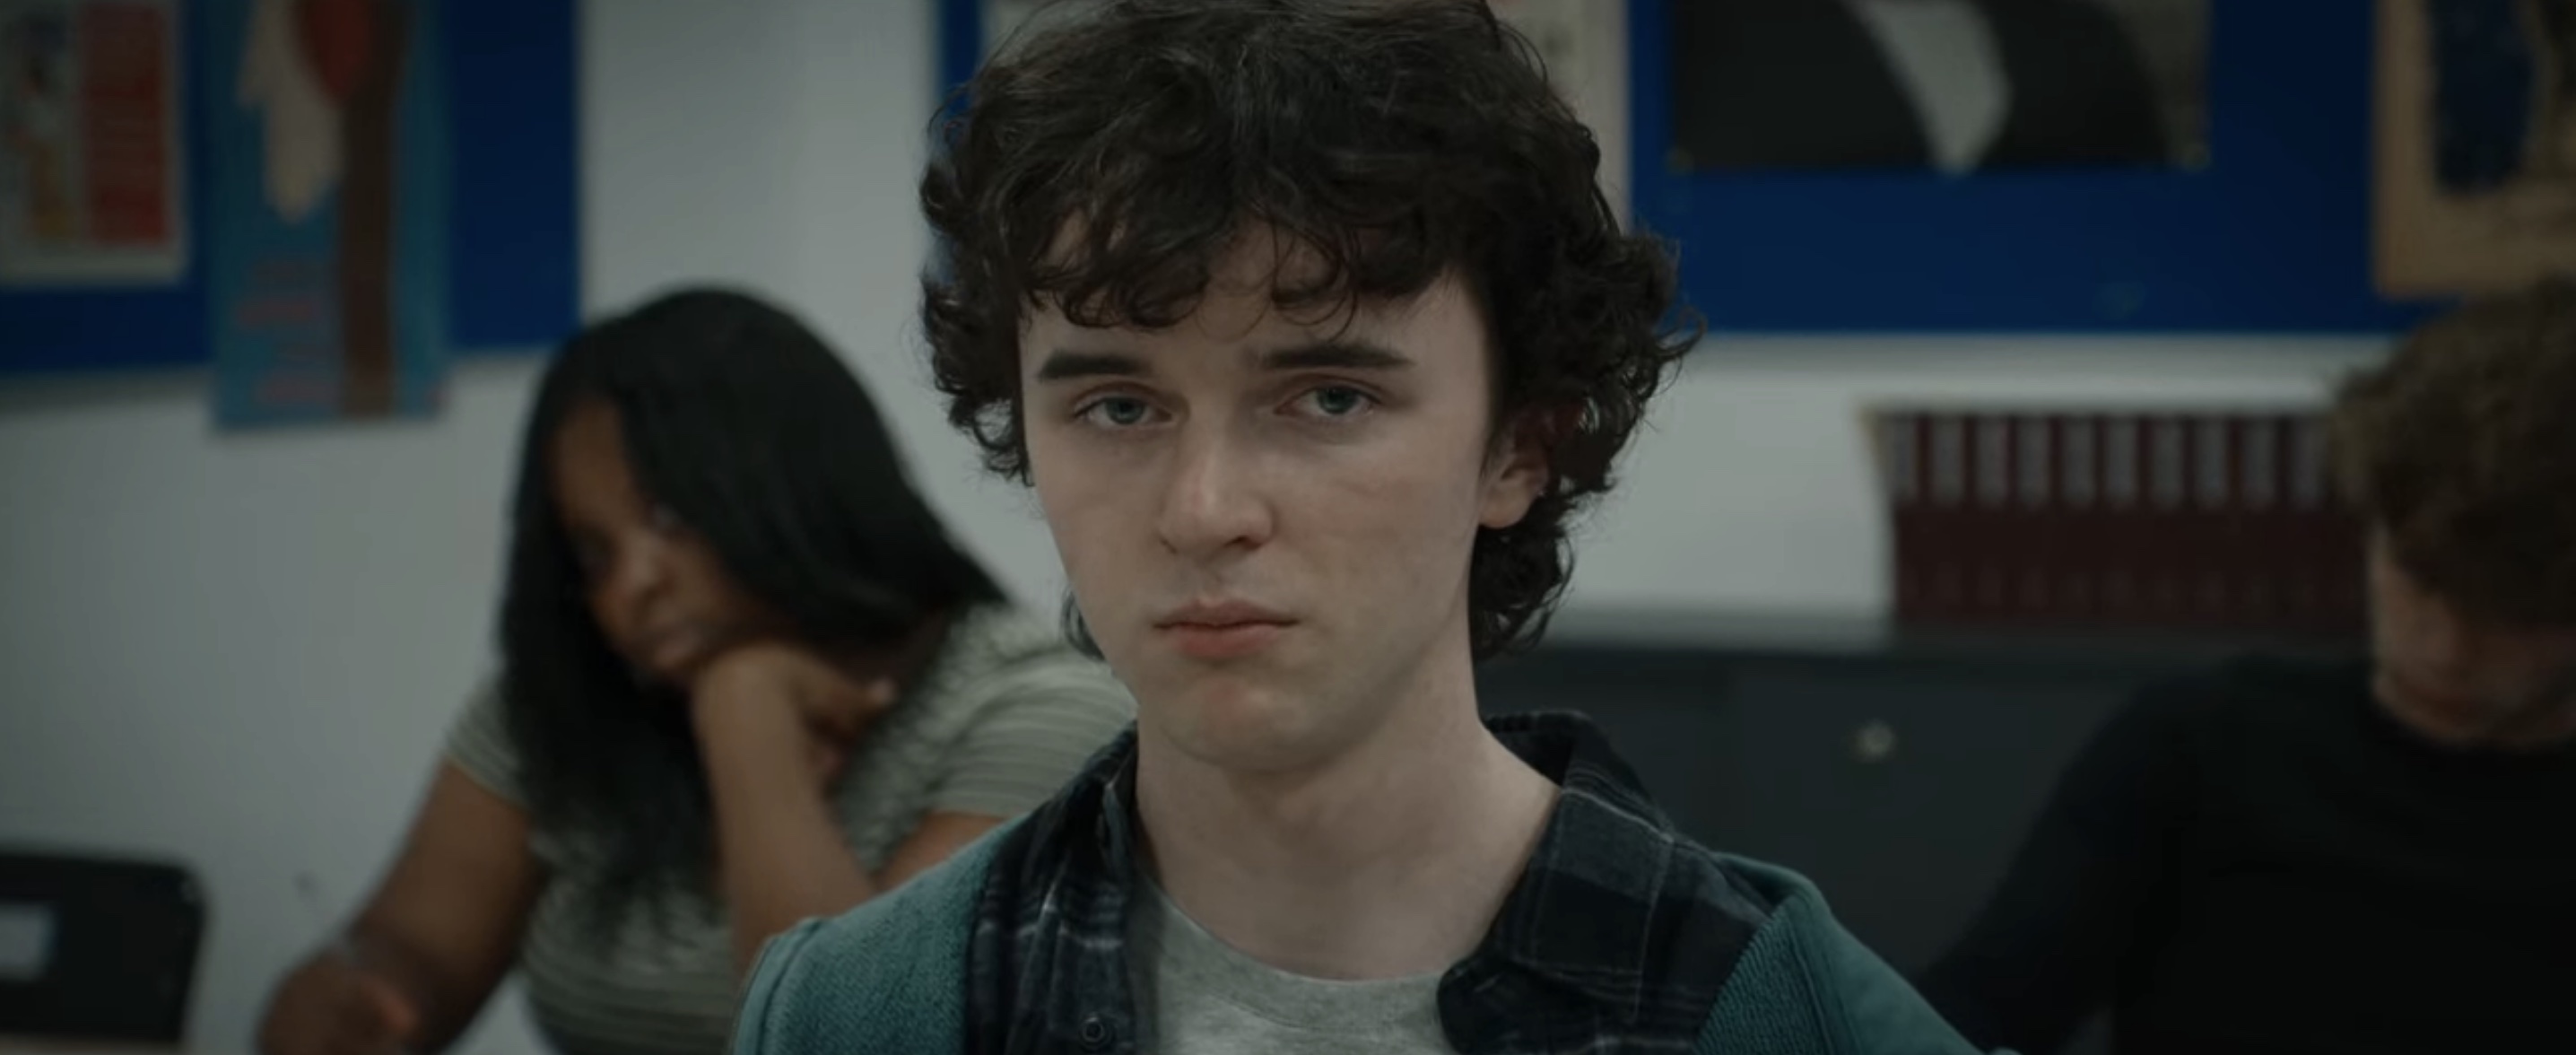 The Son Cast on Netflix - Zen McGrath as Nicholas Miller